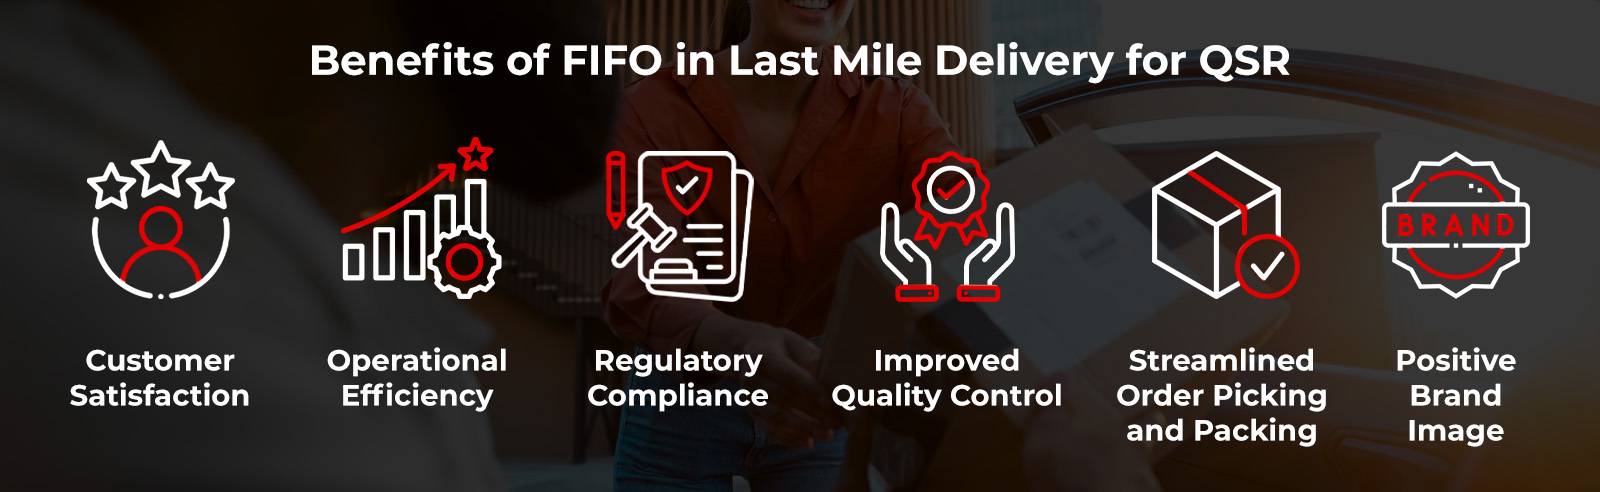 Переваги FIFO в доставці QSR на останній милі